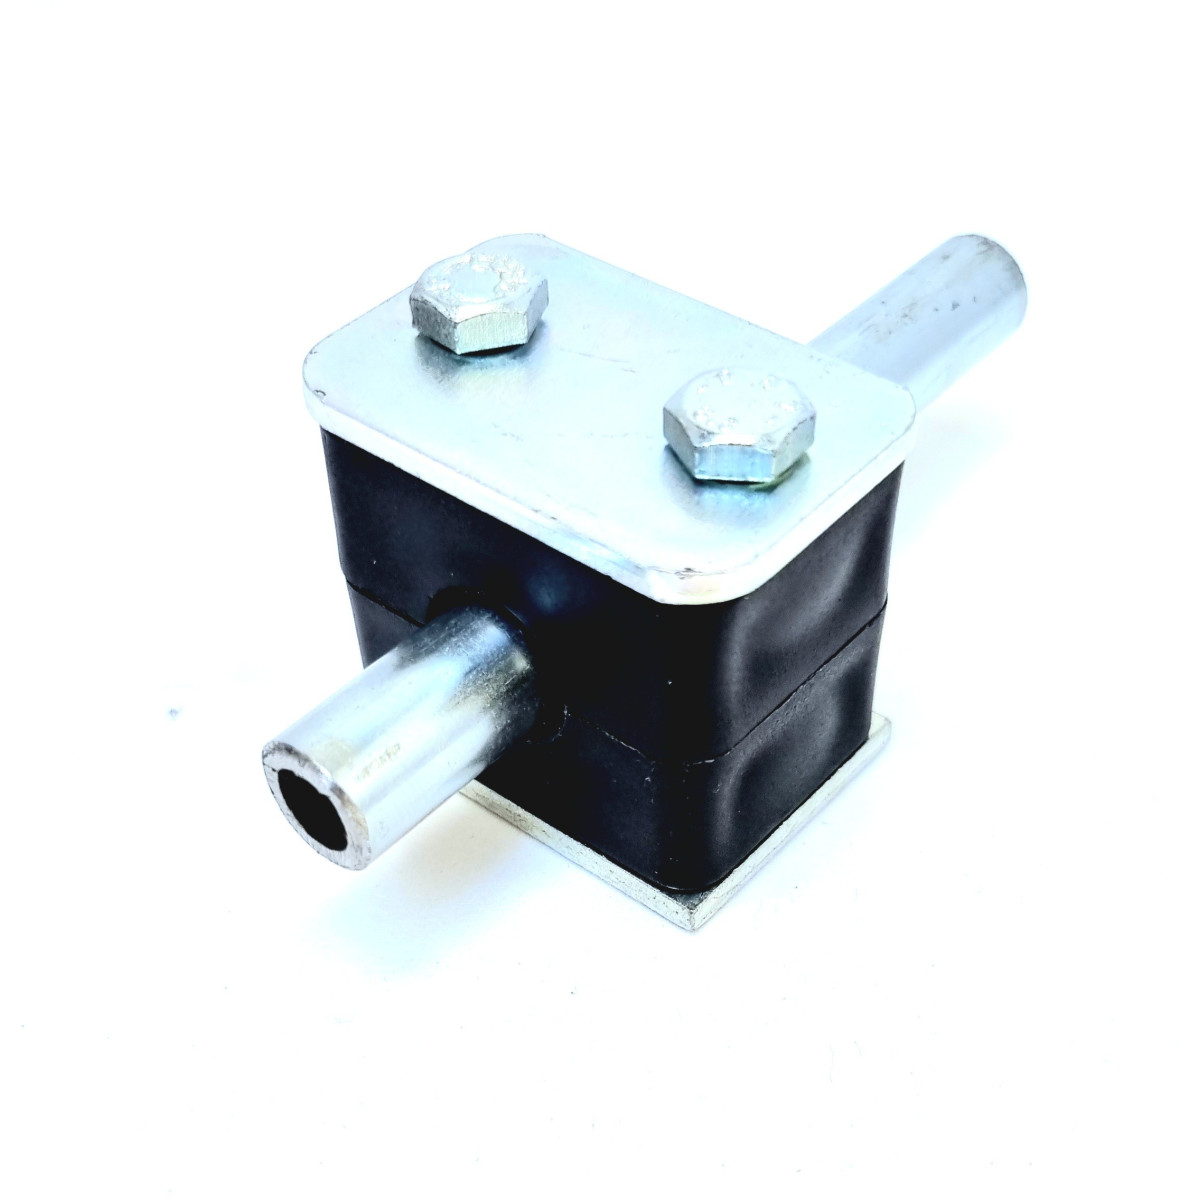 Collier de serrage pour tube à vis - DIN3567-A-108-W1 - STAUFF - en métal /  en acier inoxydable